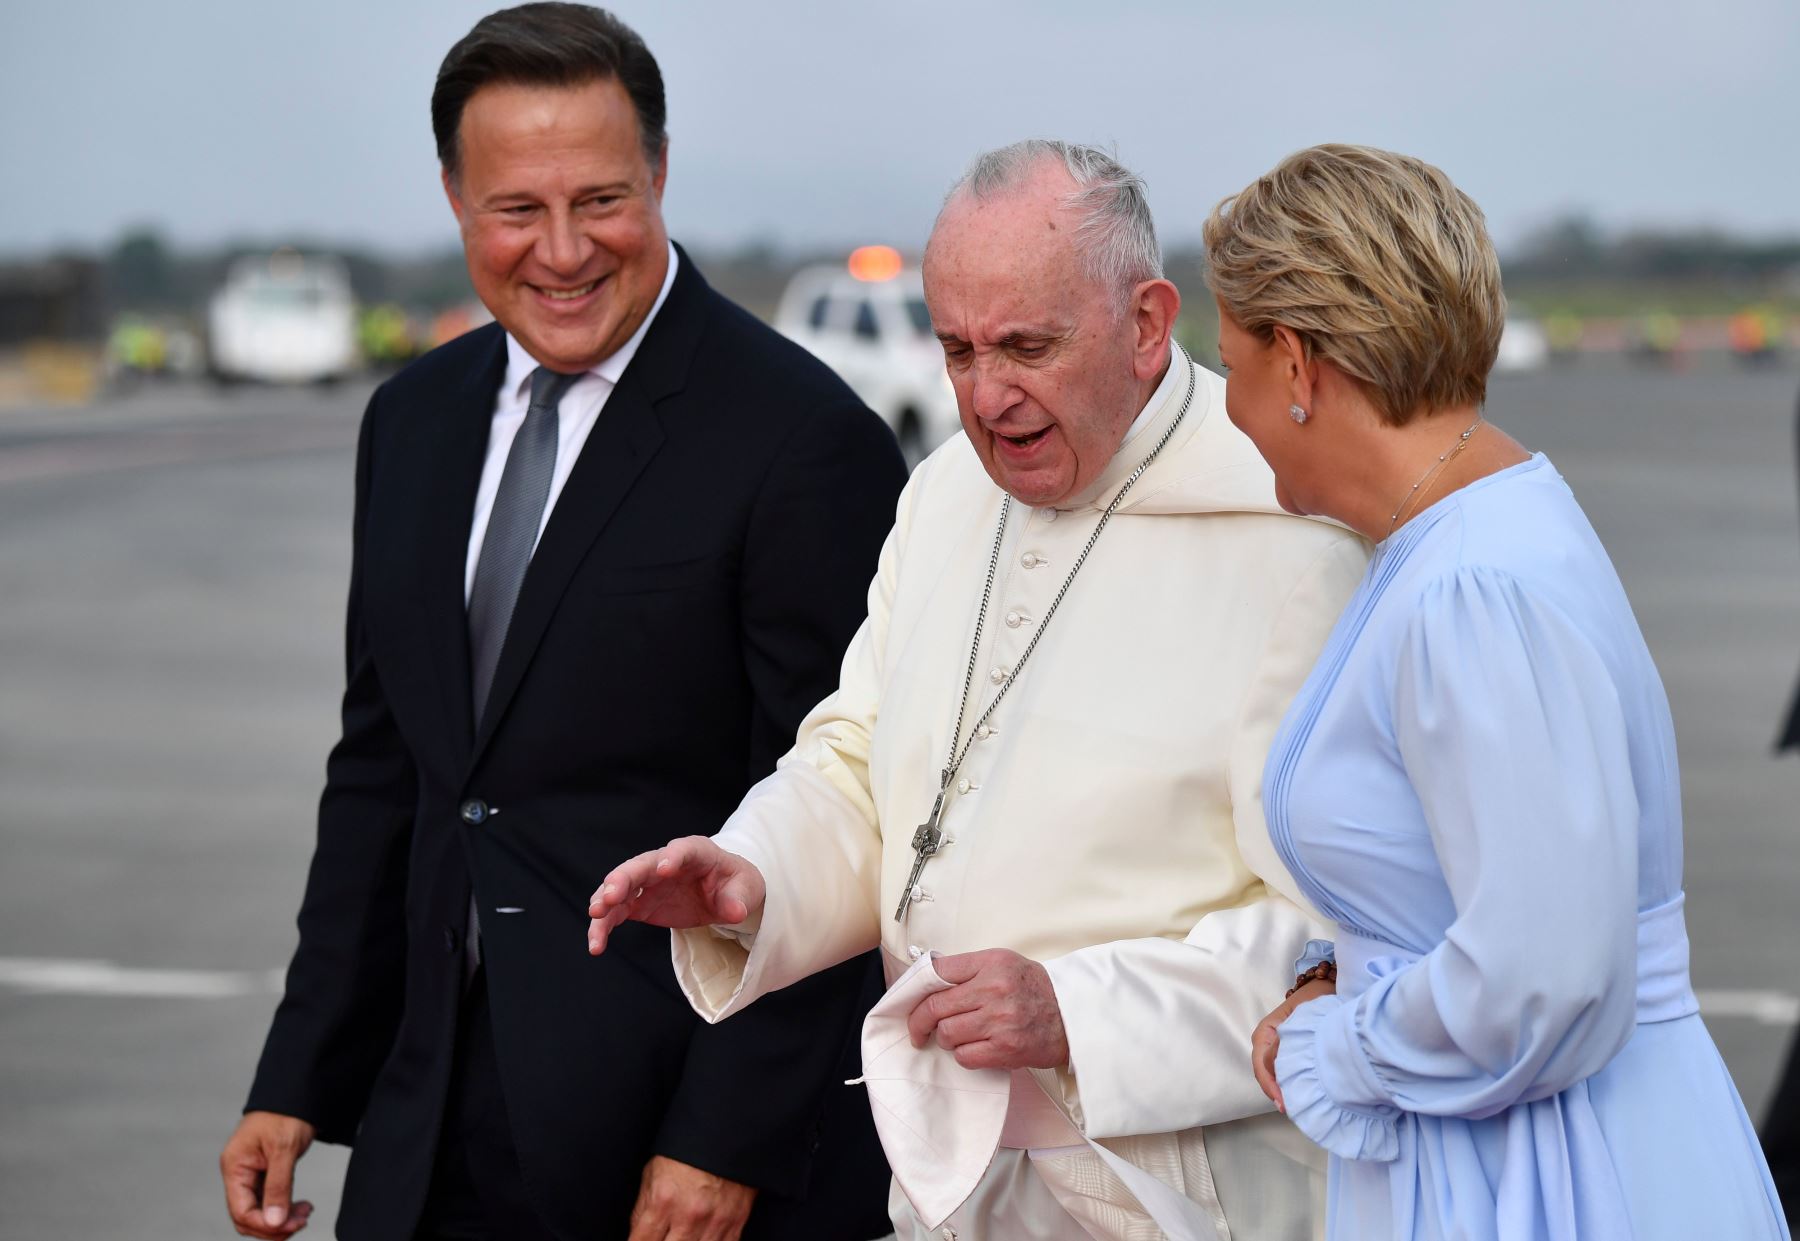 El Papa Francisco es recibido por el Presidente de Panamá, Juan Carlos Varela, y su esposa Lorena Castillo al aterrizar en el Aeropuerto Internacional de Tocumen en la Ciudad de Panamá el 23 de enero de 2019 Foto: AFP